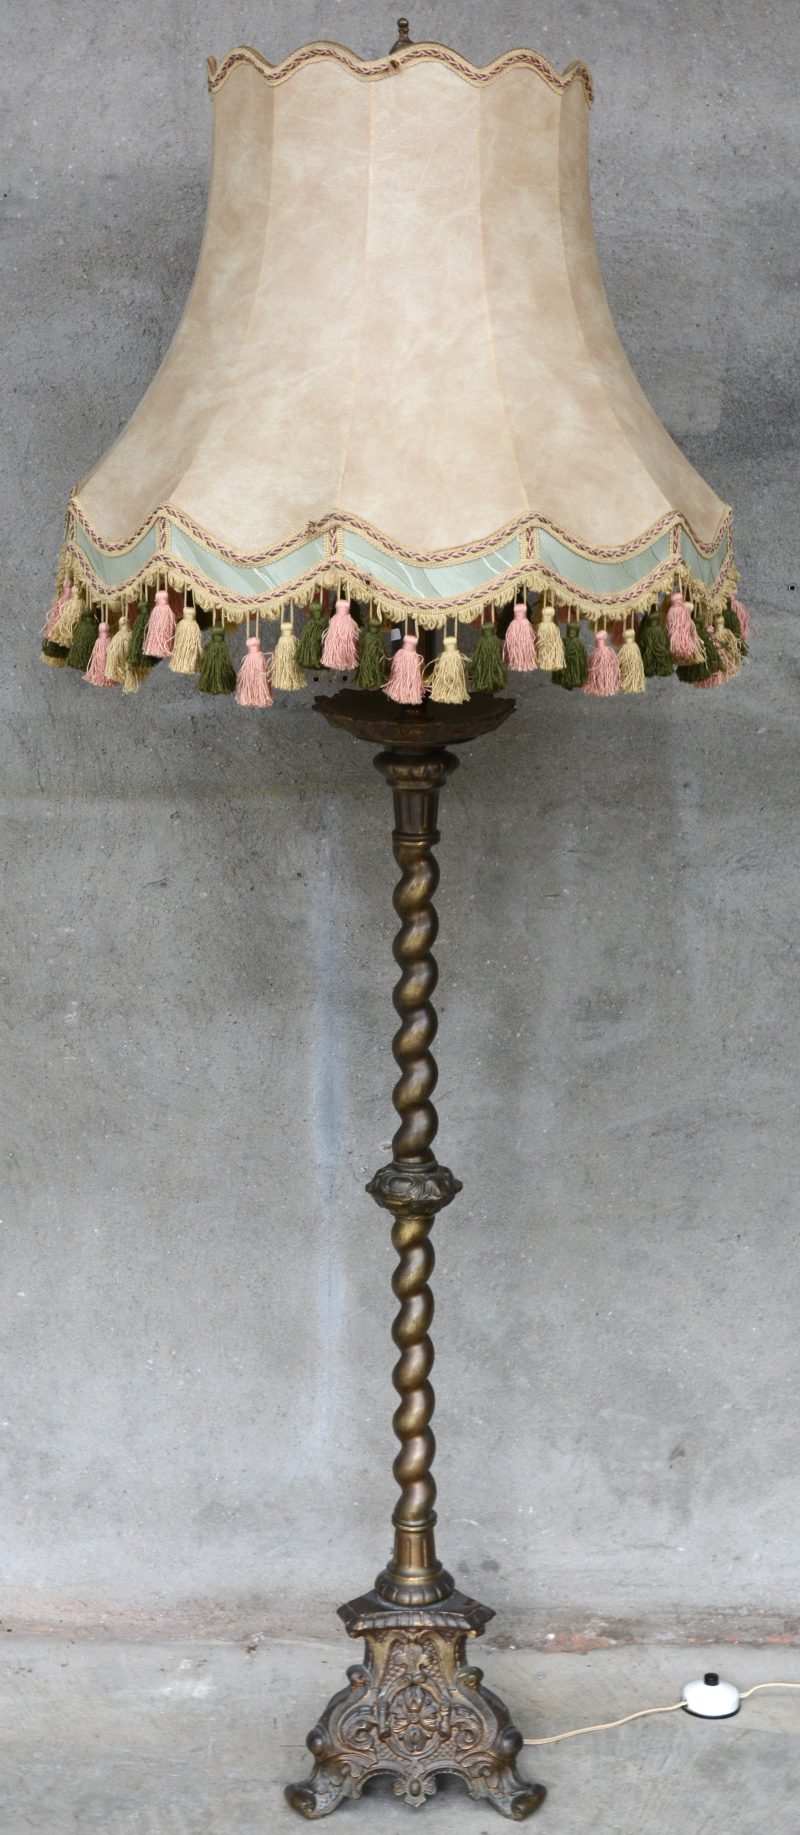 Een staande lamp van koper in barokke stijl.